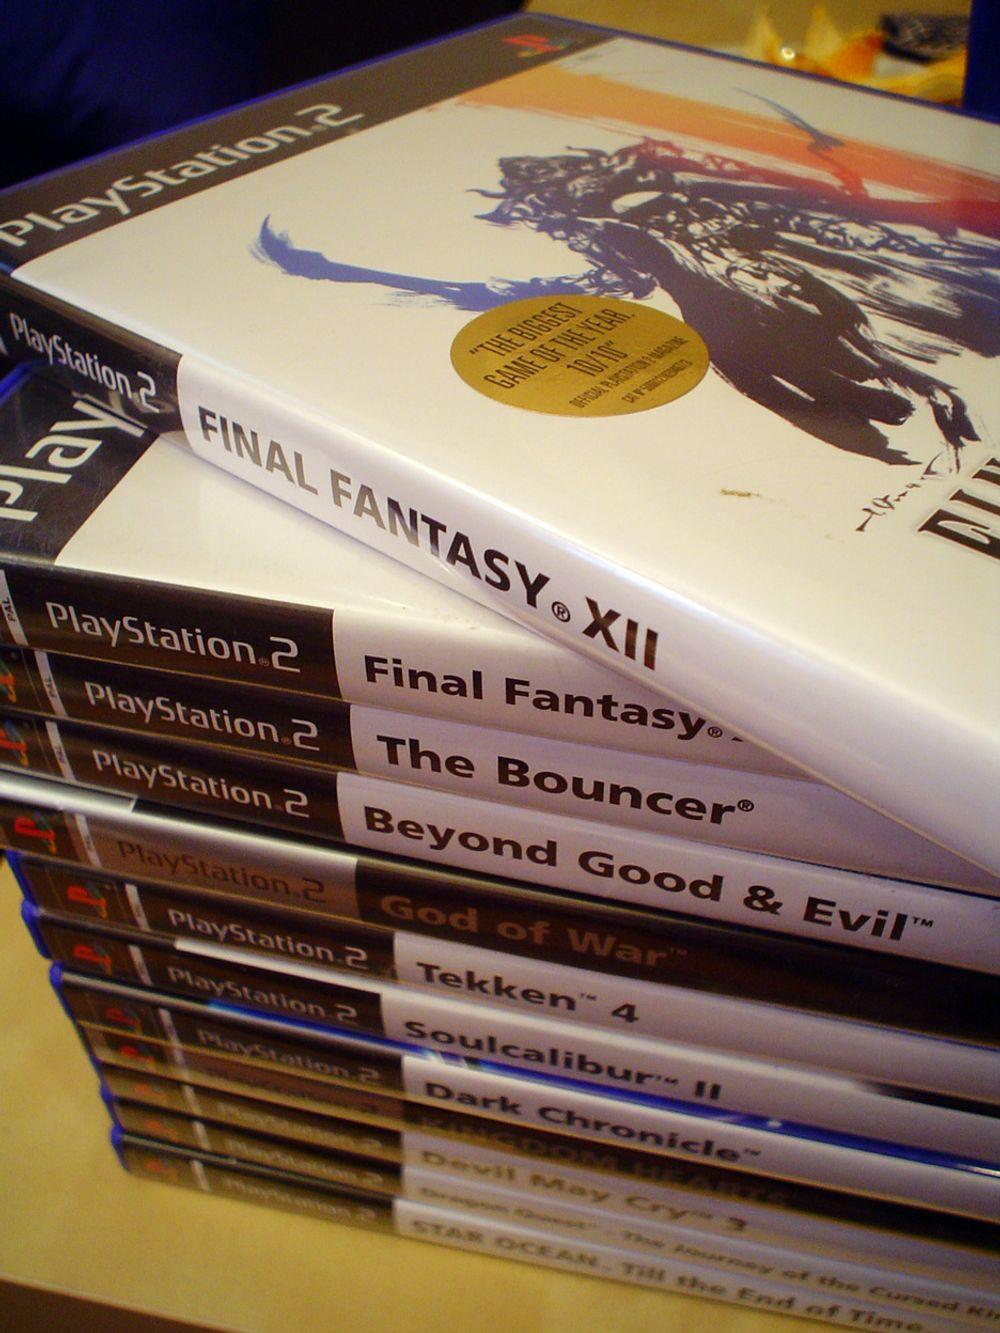 GENERASJONSSKIFTE: De gamle stortitlene fra Playstation 2-tiden, som for eksempel Final Fantasy XII, kommer ikke til å fungere på de nye Playstation 3-modellene.